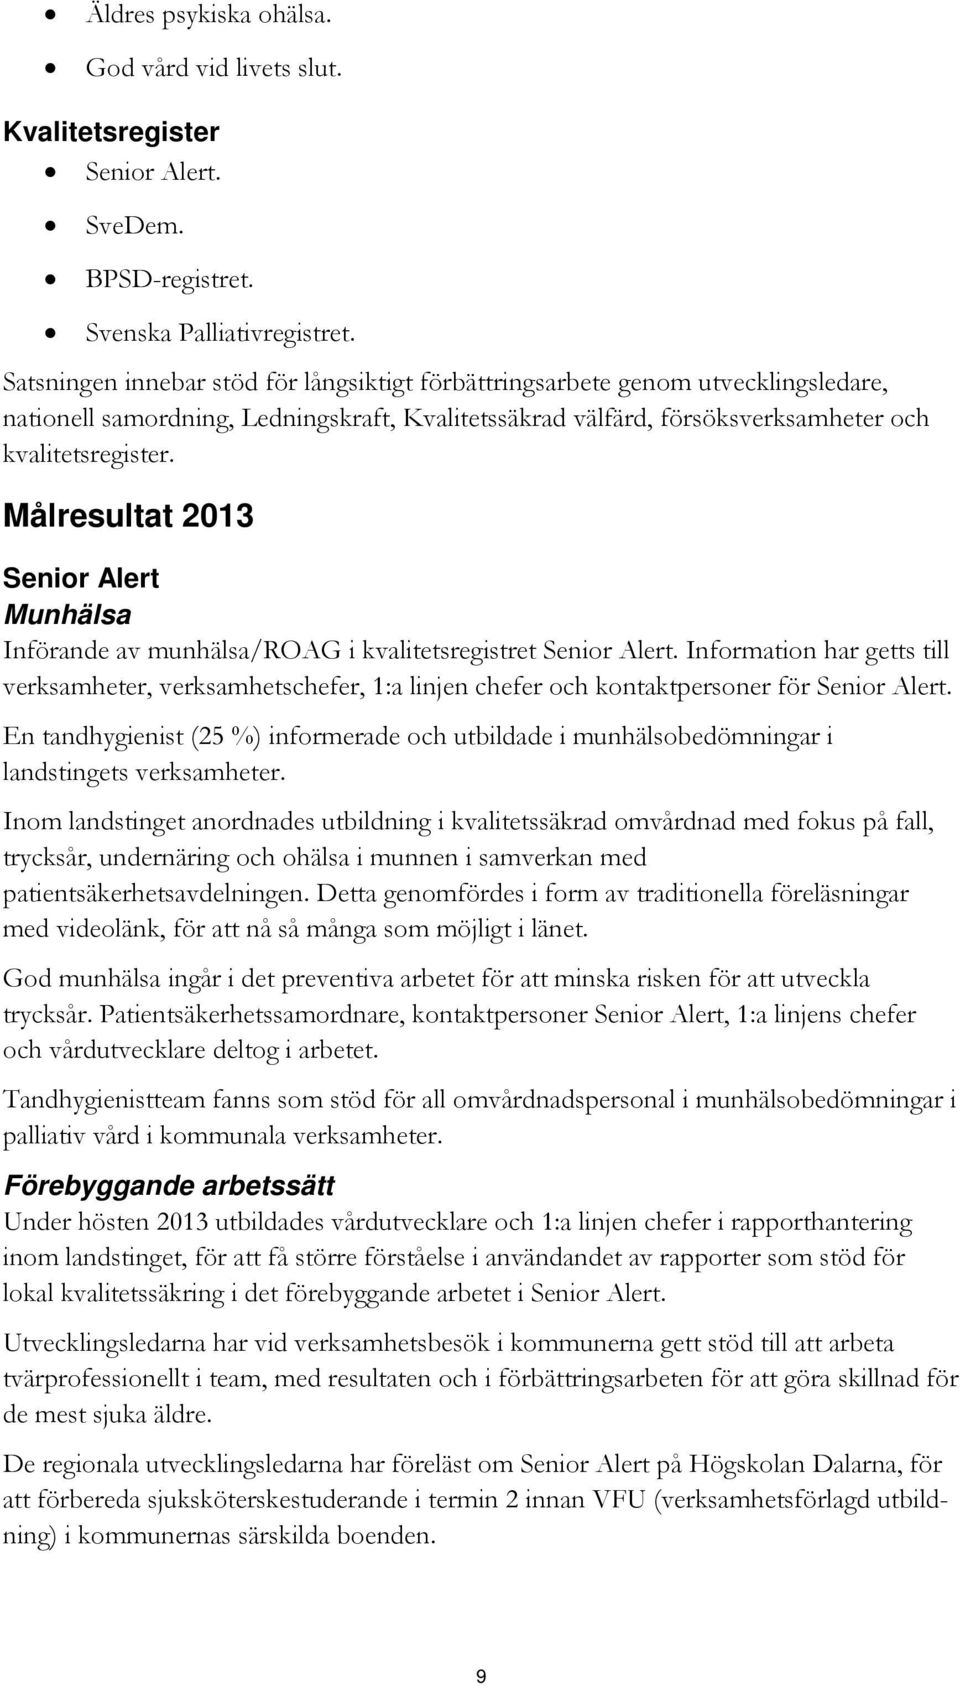 Målresultat 2013 Senior Alert Munhälsa Införande av munhälsa/roag i kvalitetsregistret Senior Alert.